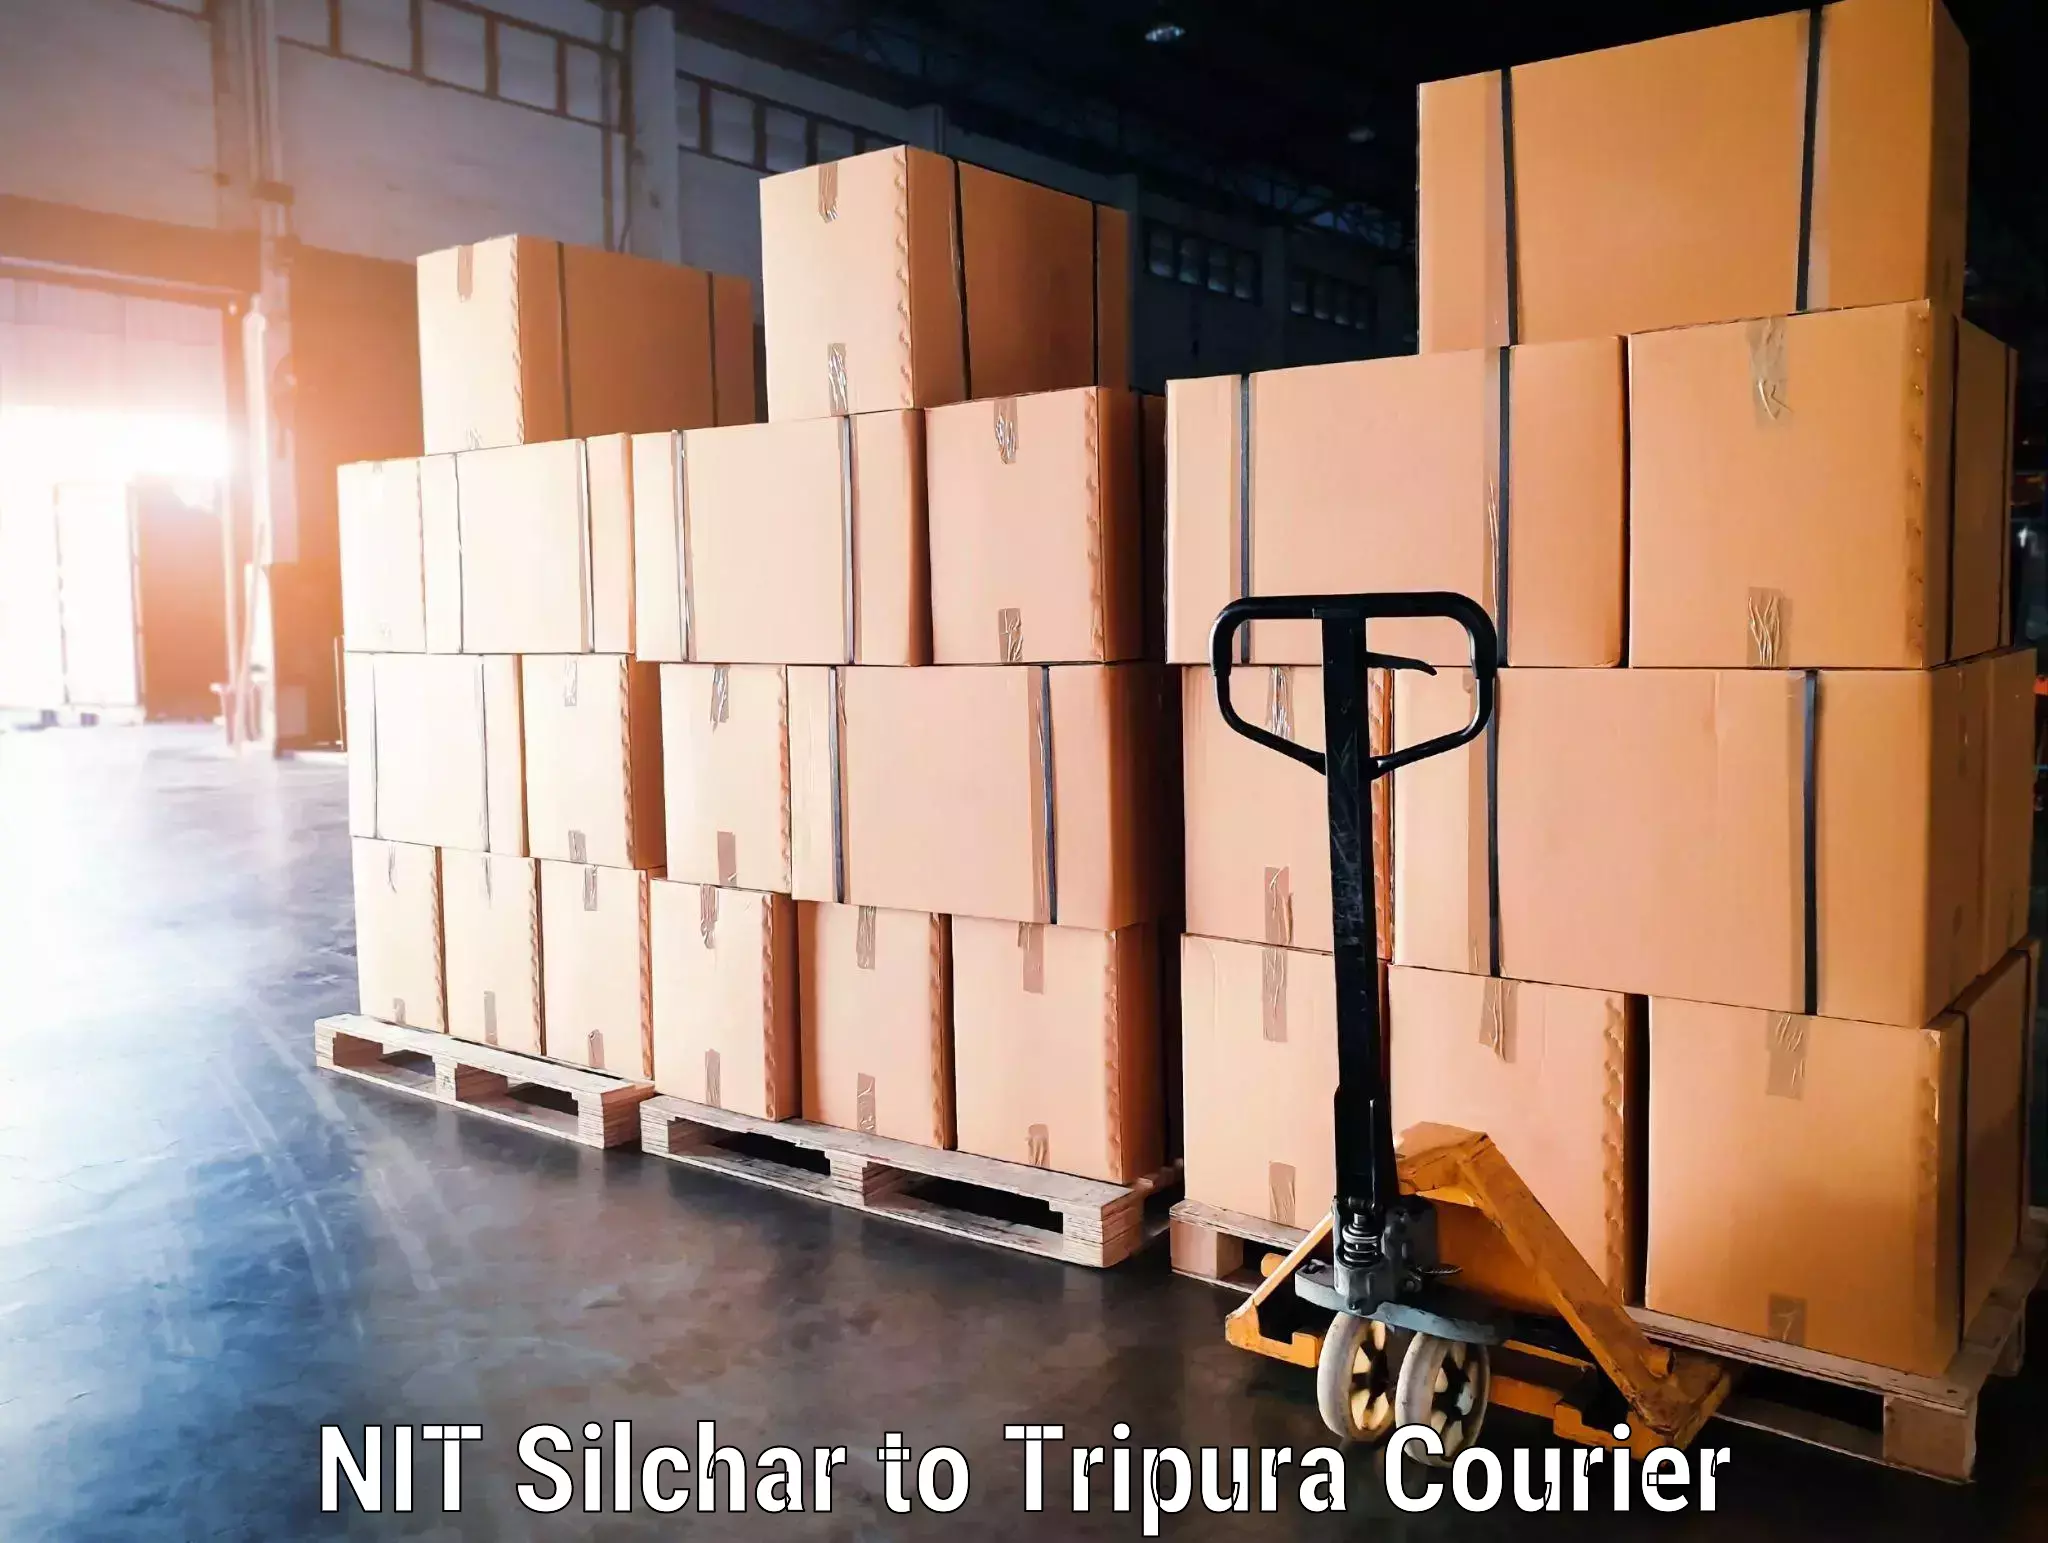 Luggage transfer service NIT Silchar to Agartala